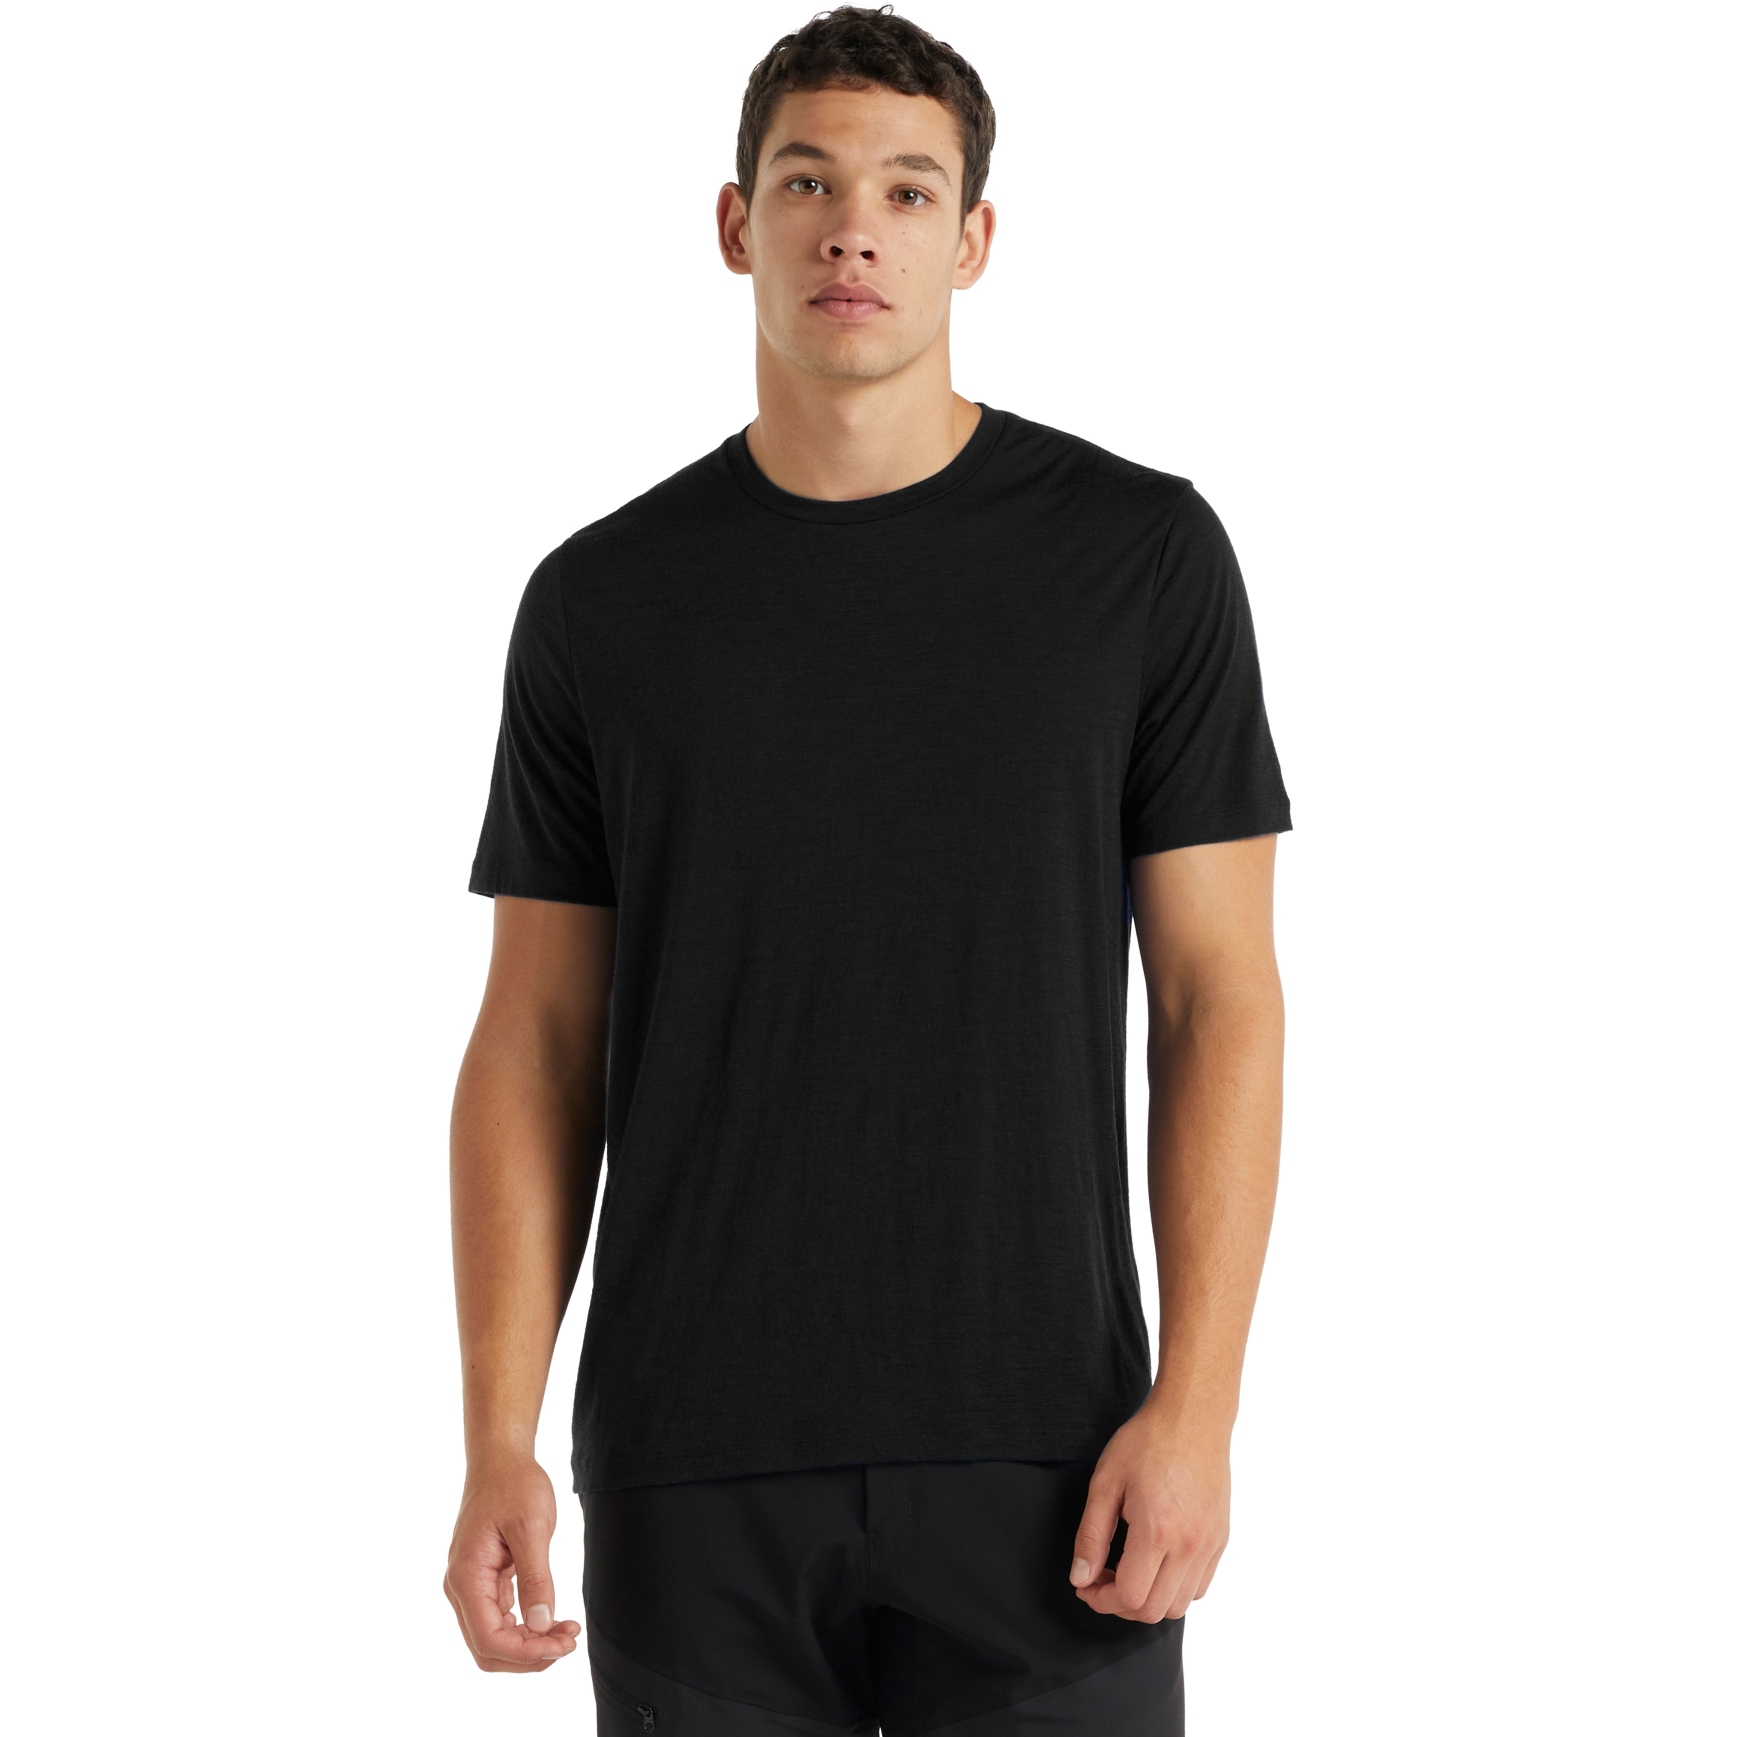 Produktbild von Icebreaker Tech Lite II Herren T-Shirt - Schwarz